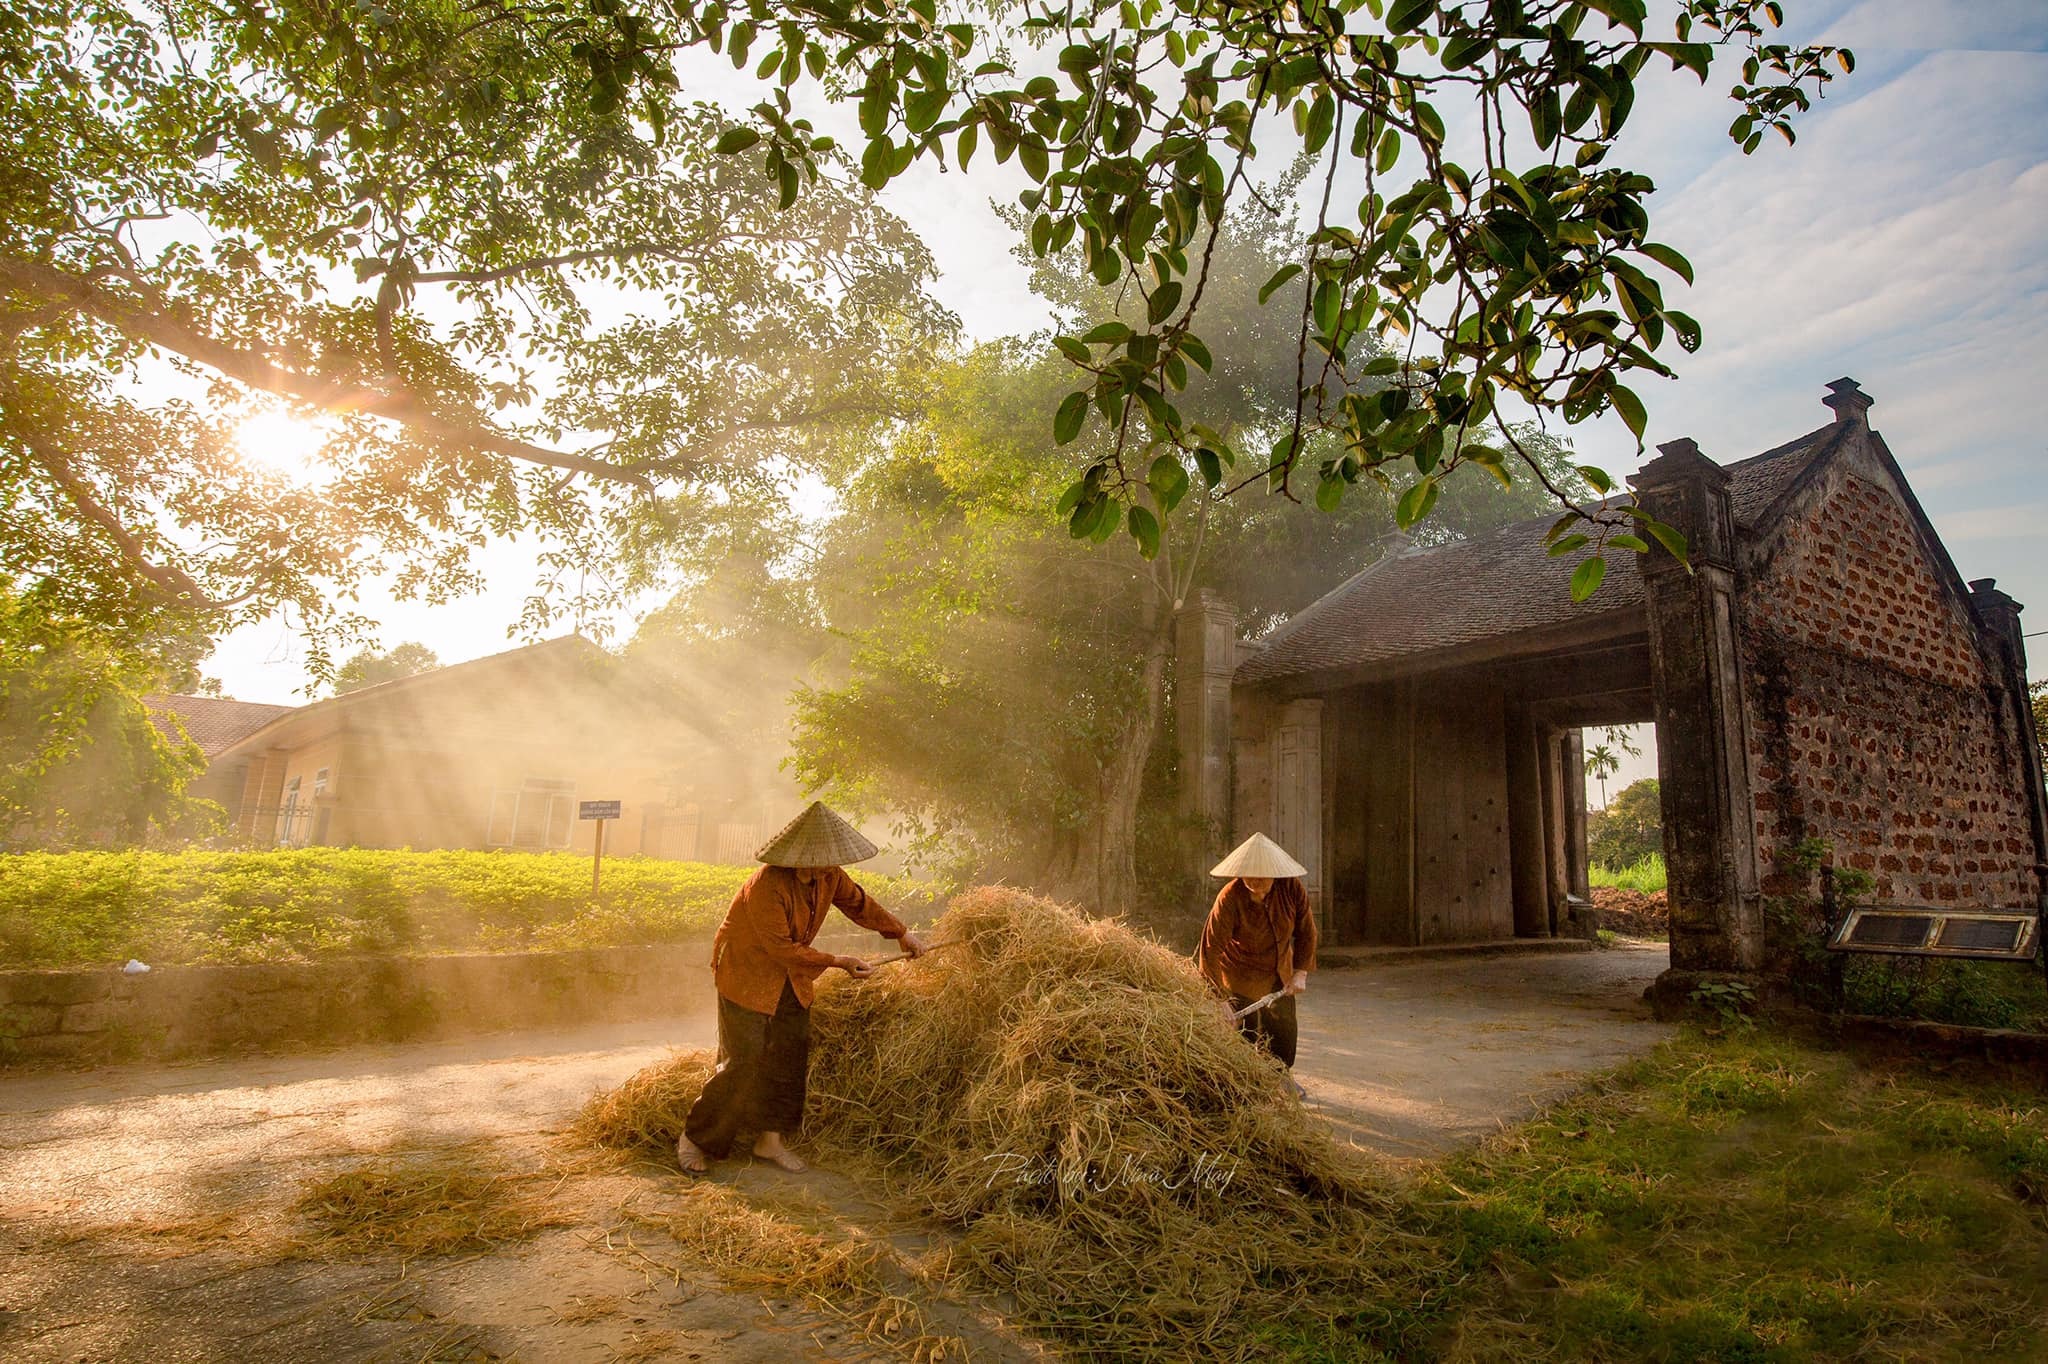 Hình ảnh bình yên nơi làng cổ trăm tuổi Đường Lâm khiến du khách nóng lòng  tới chiêm ngưỡng